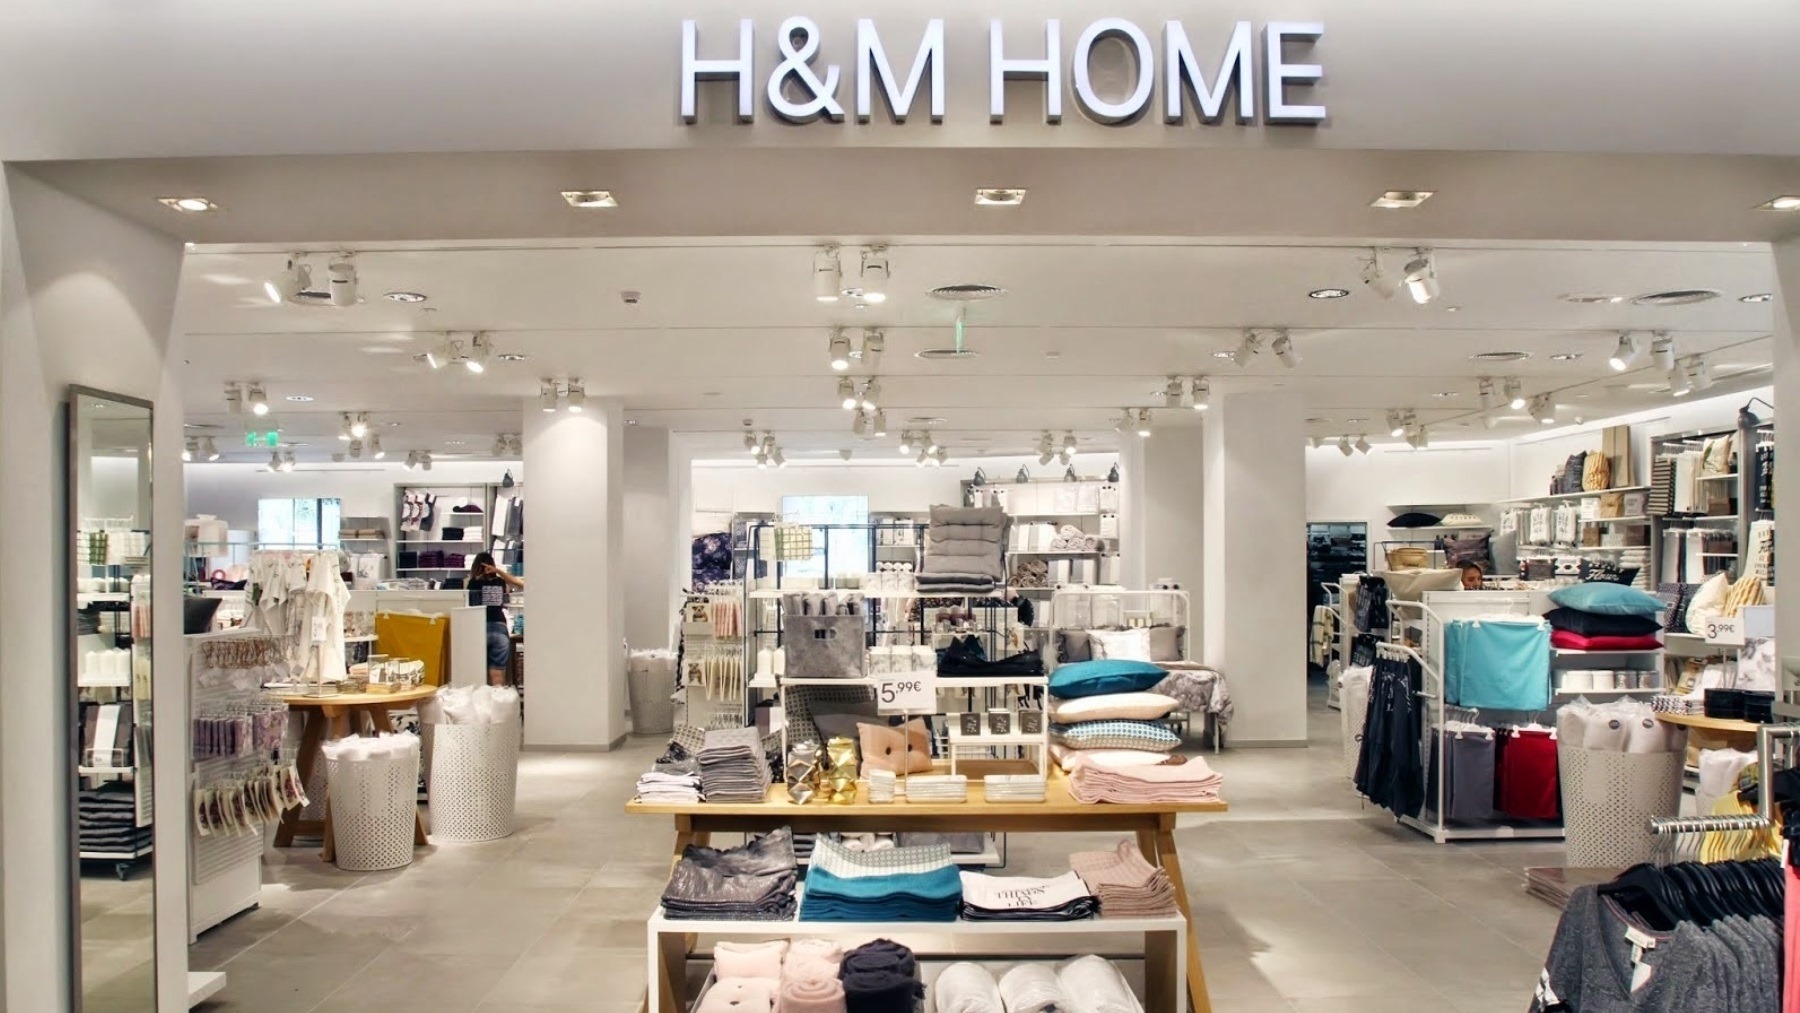 Adiós a esforzarte ordenando la casa: H&M Home tiene la solución por menos de 15 euros